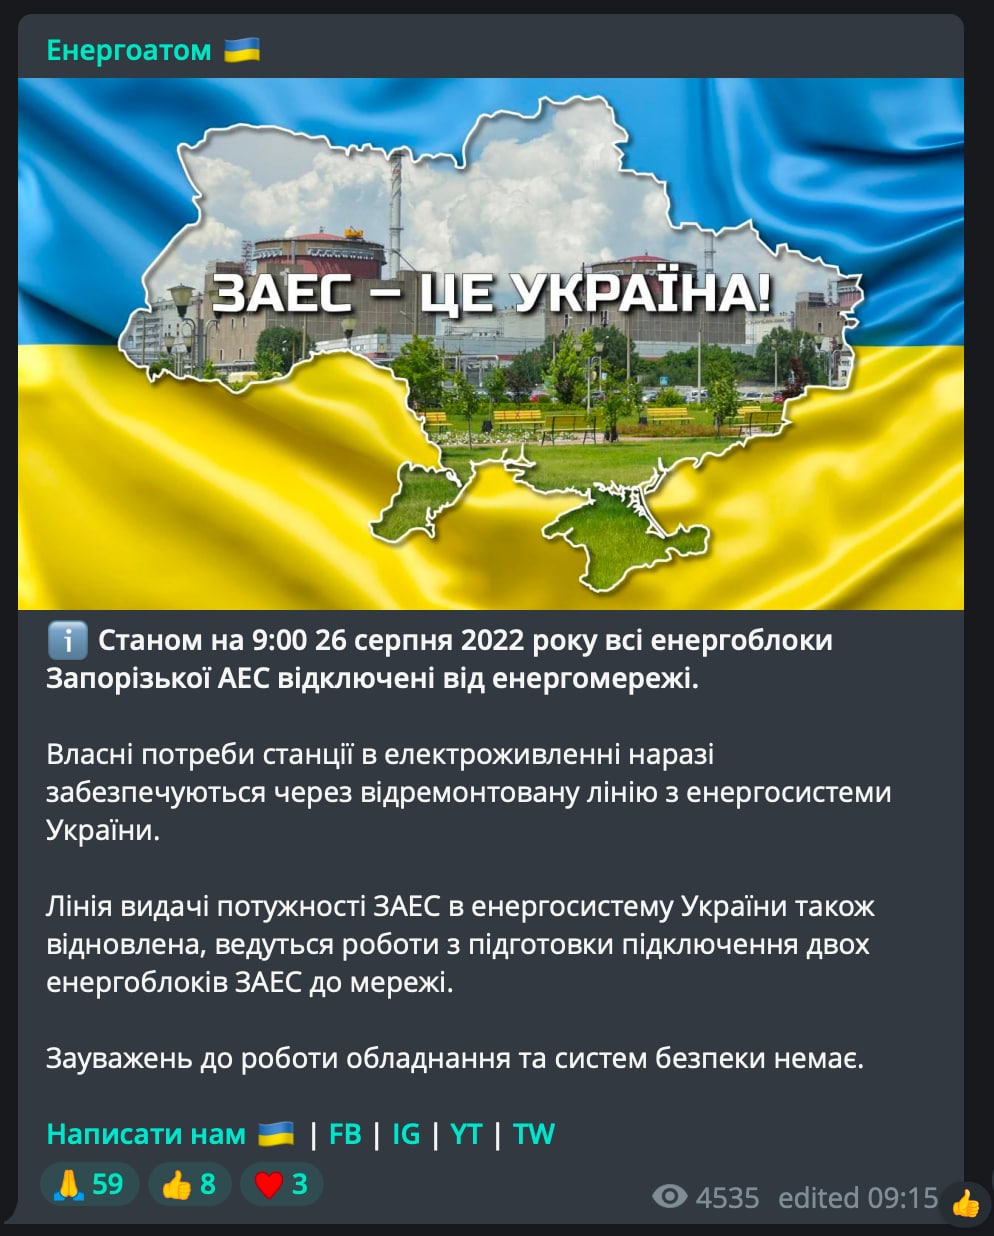 Реальная война украина телеграмм (119) фото